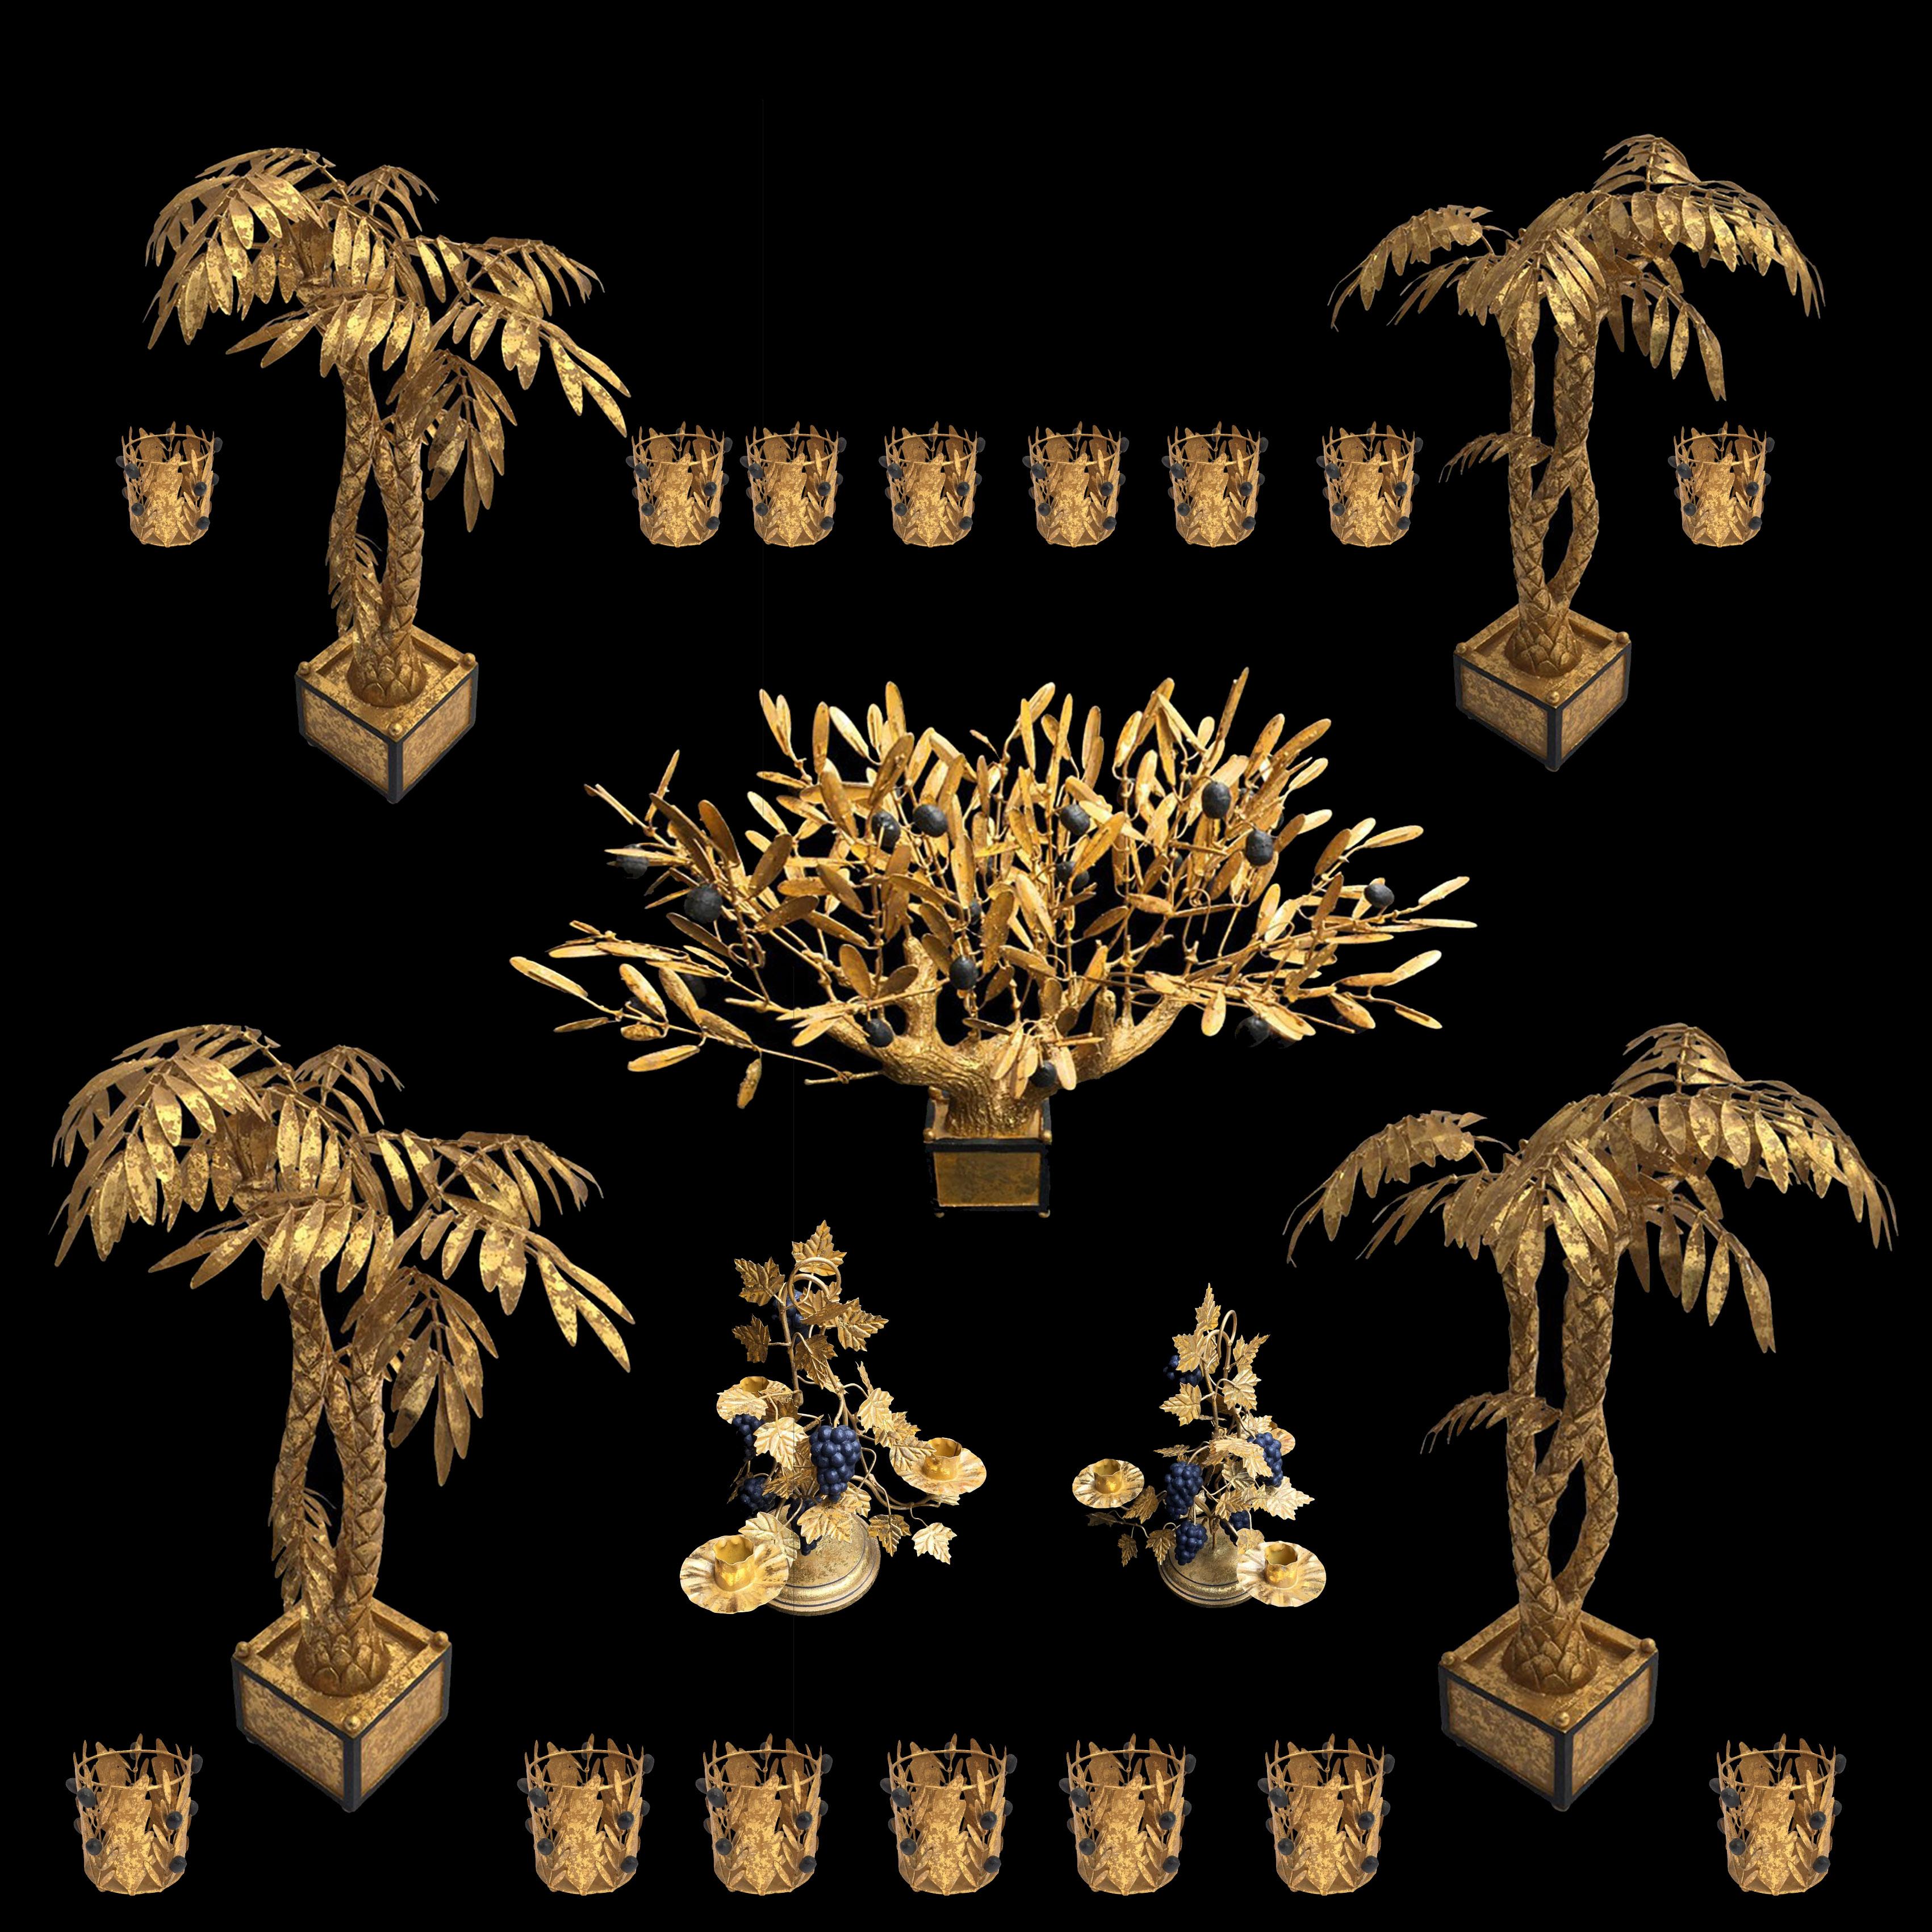 large metal palm tree